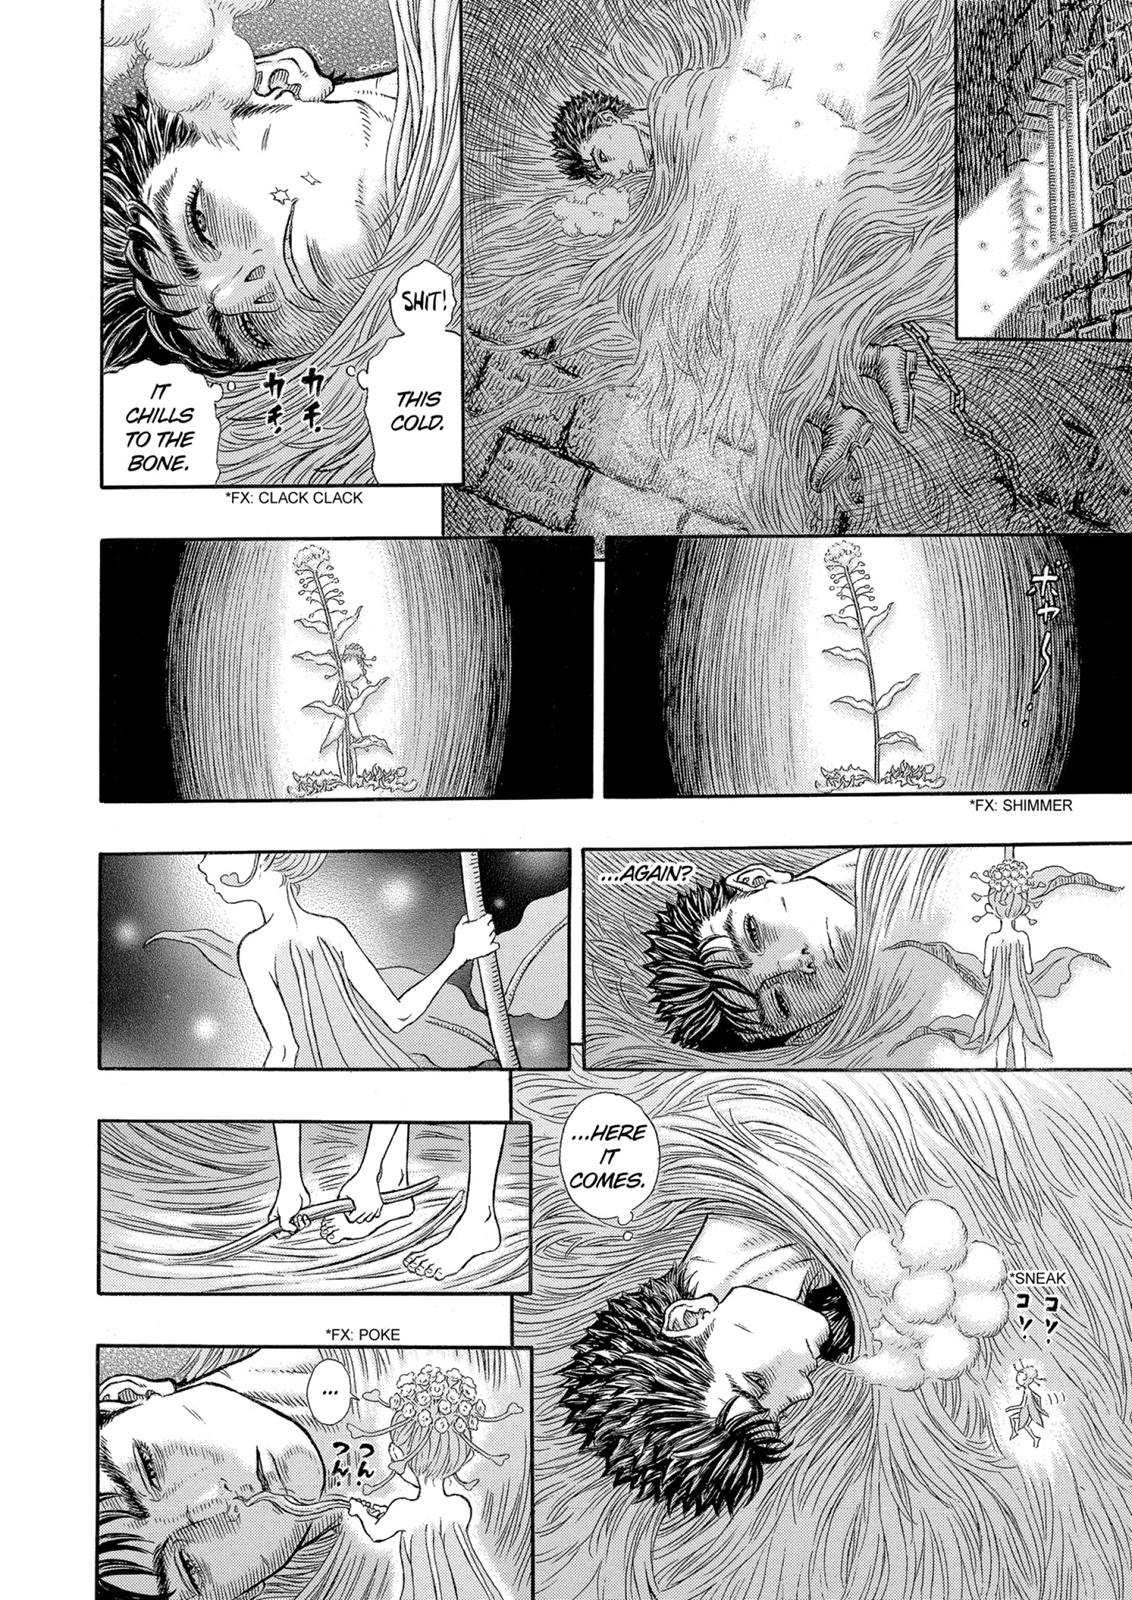 Berserk Manga Chapter 330 image 07